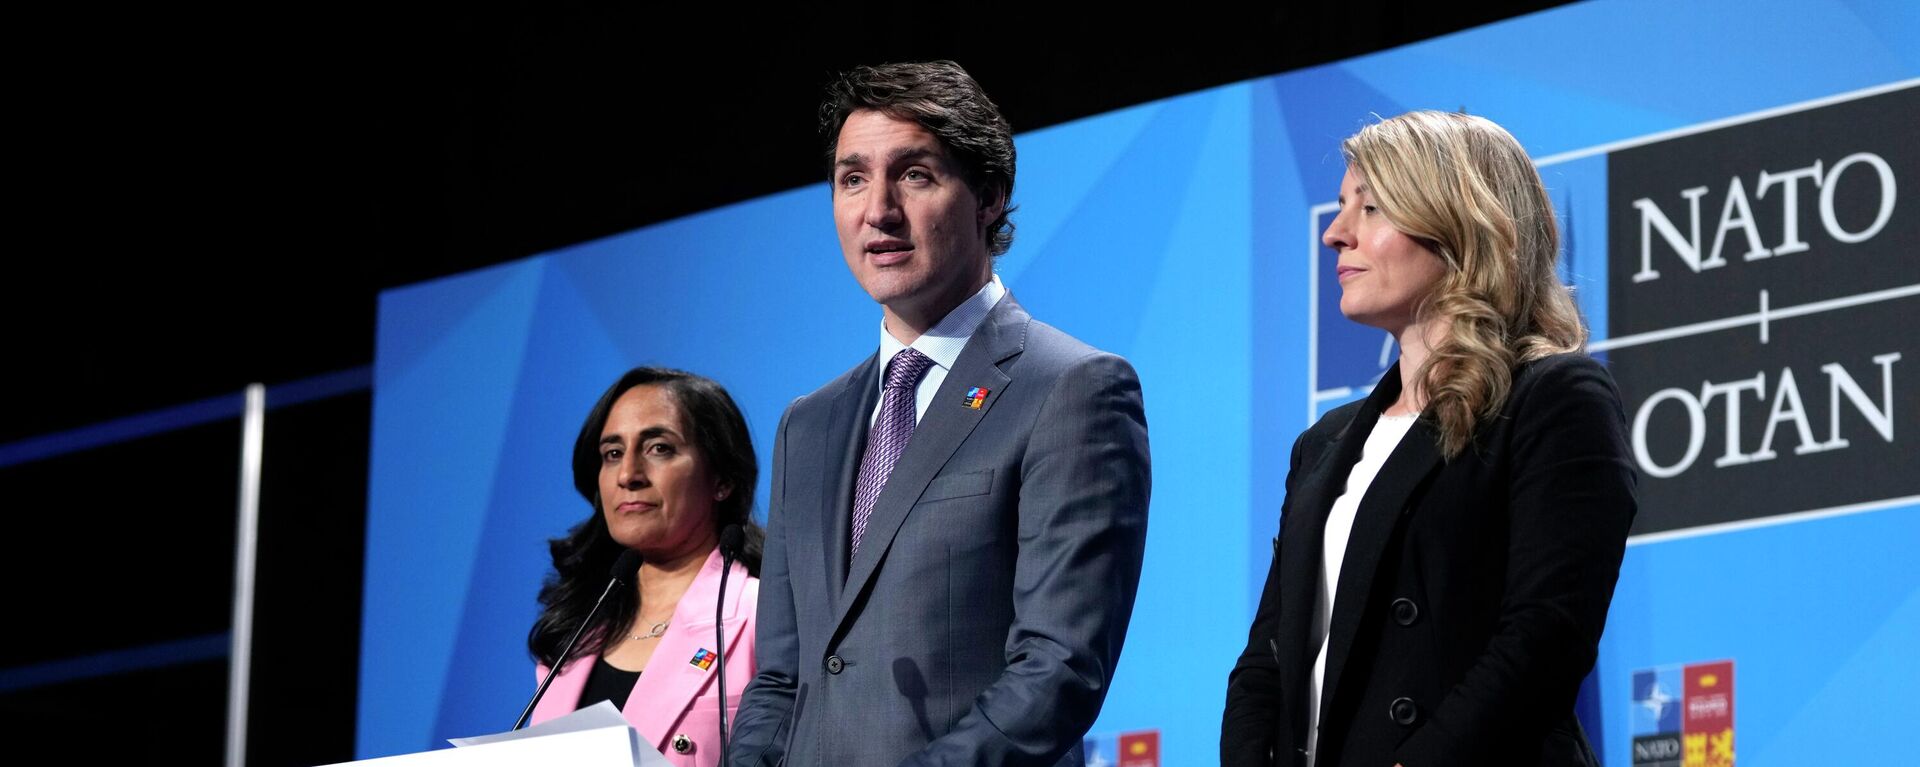 O primeiro-ministro, Justin Trudeau, fala durante coletiva de imprensa durante a cúpula da Organização do Tratado do Atlântico Norte (OTAN), em 30 de junho de 2022 - Sputnik Brasil, 1920, 03.02.2023